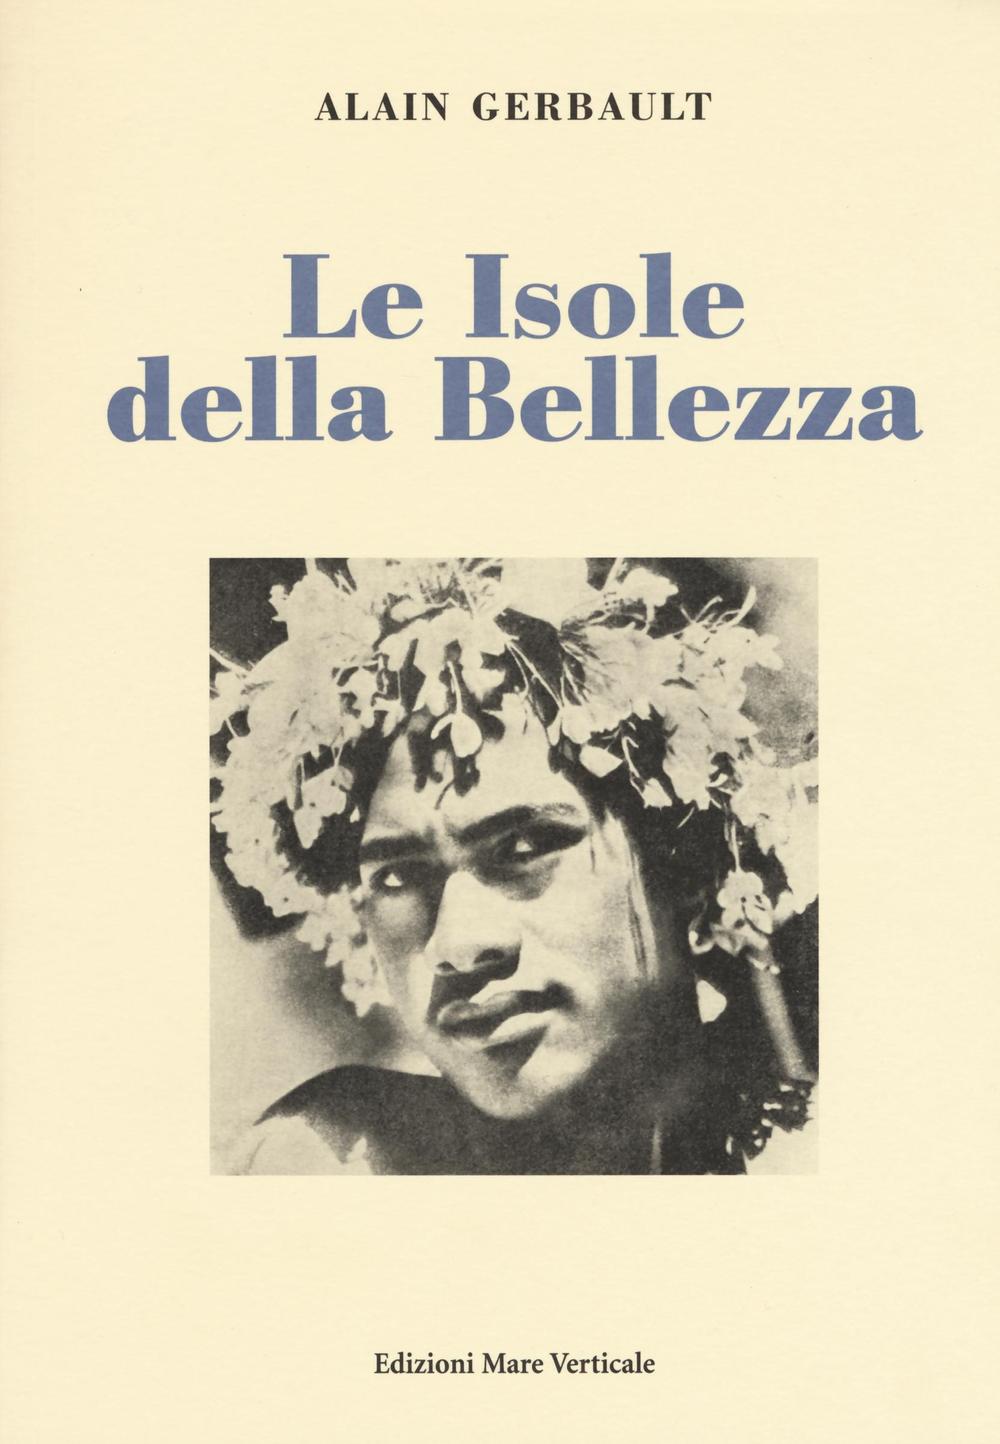 Libri Alain Gerbault - Le Isole Della Bellezza NUOVO SIGILLATO, EDIZIONE DEL 24/03/2016 SUBITO DISPONIBILE